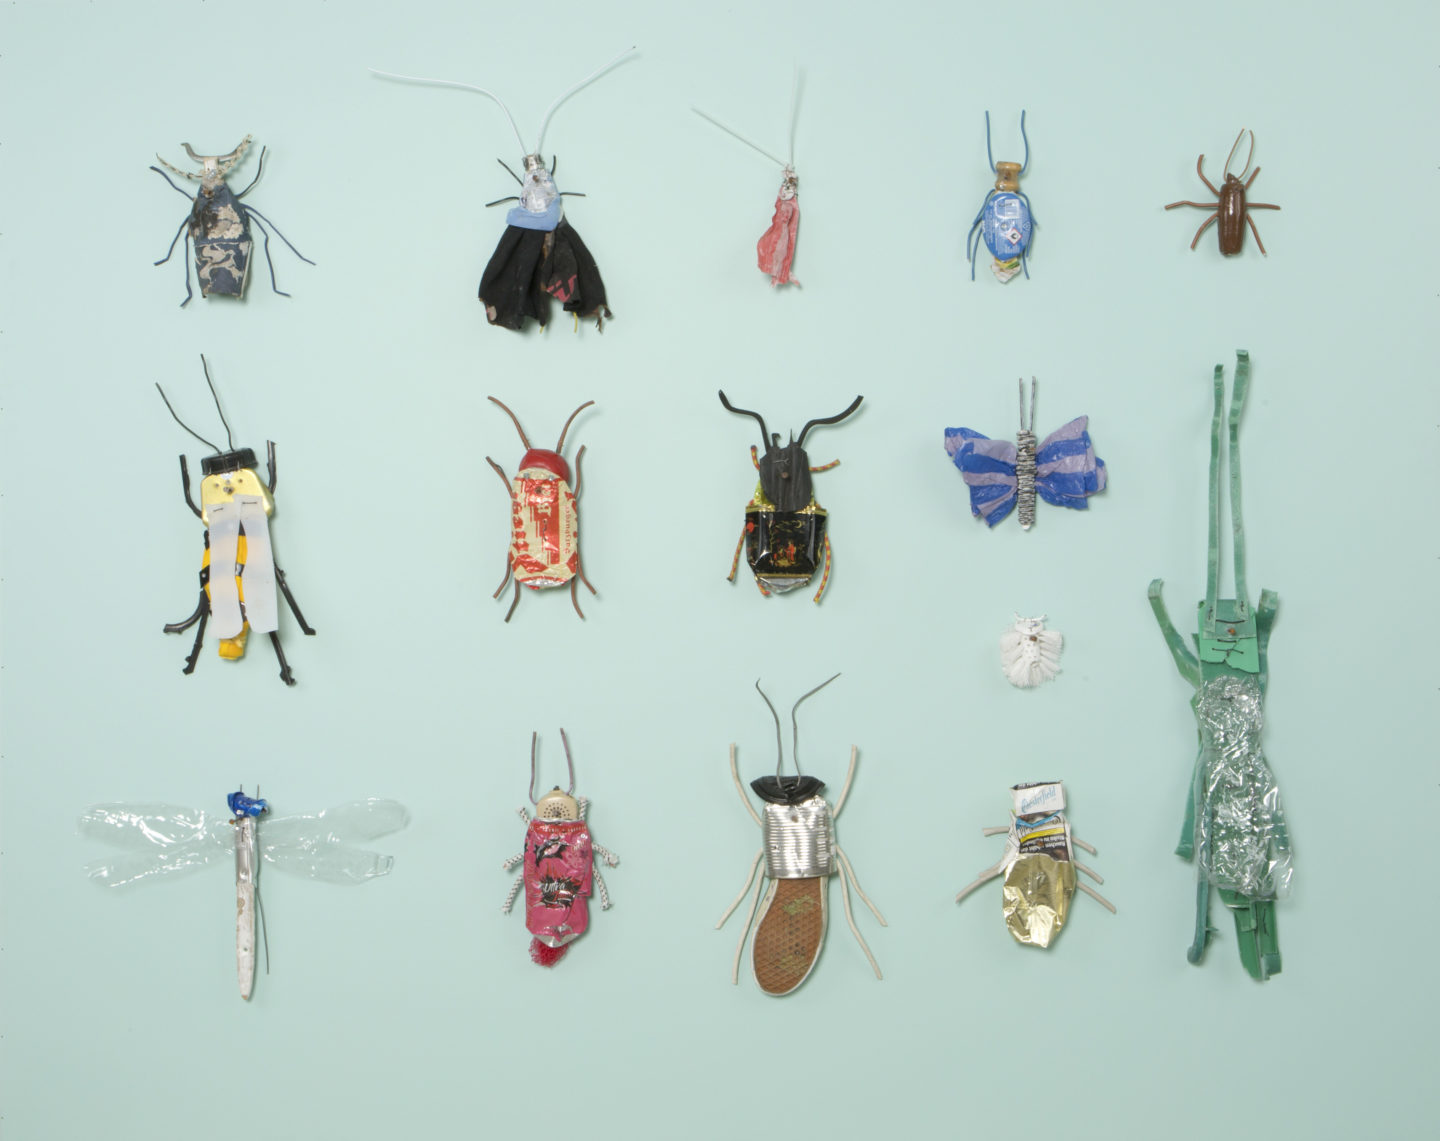 Großer Insektenkasten II, 2020, mixed media, 160 x 200 cm